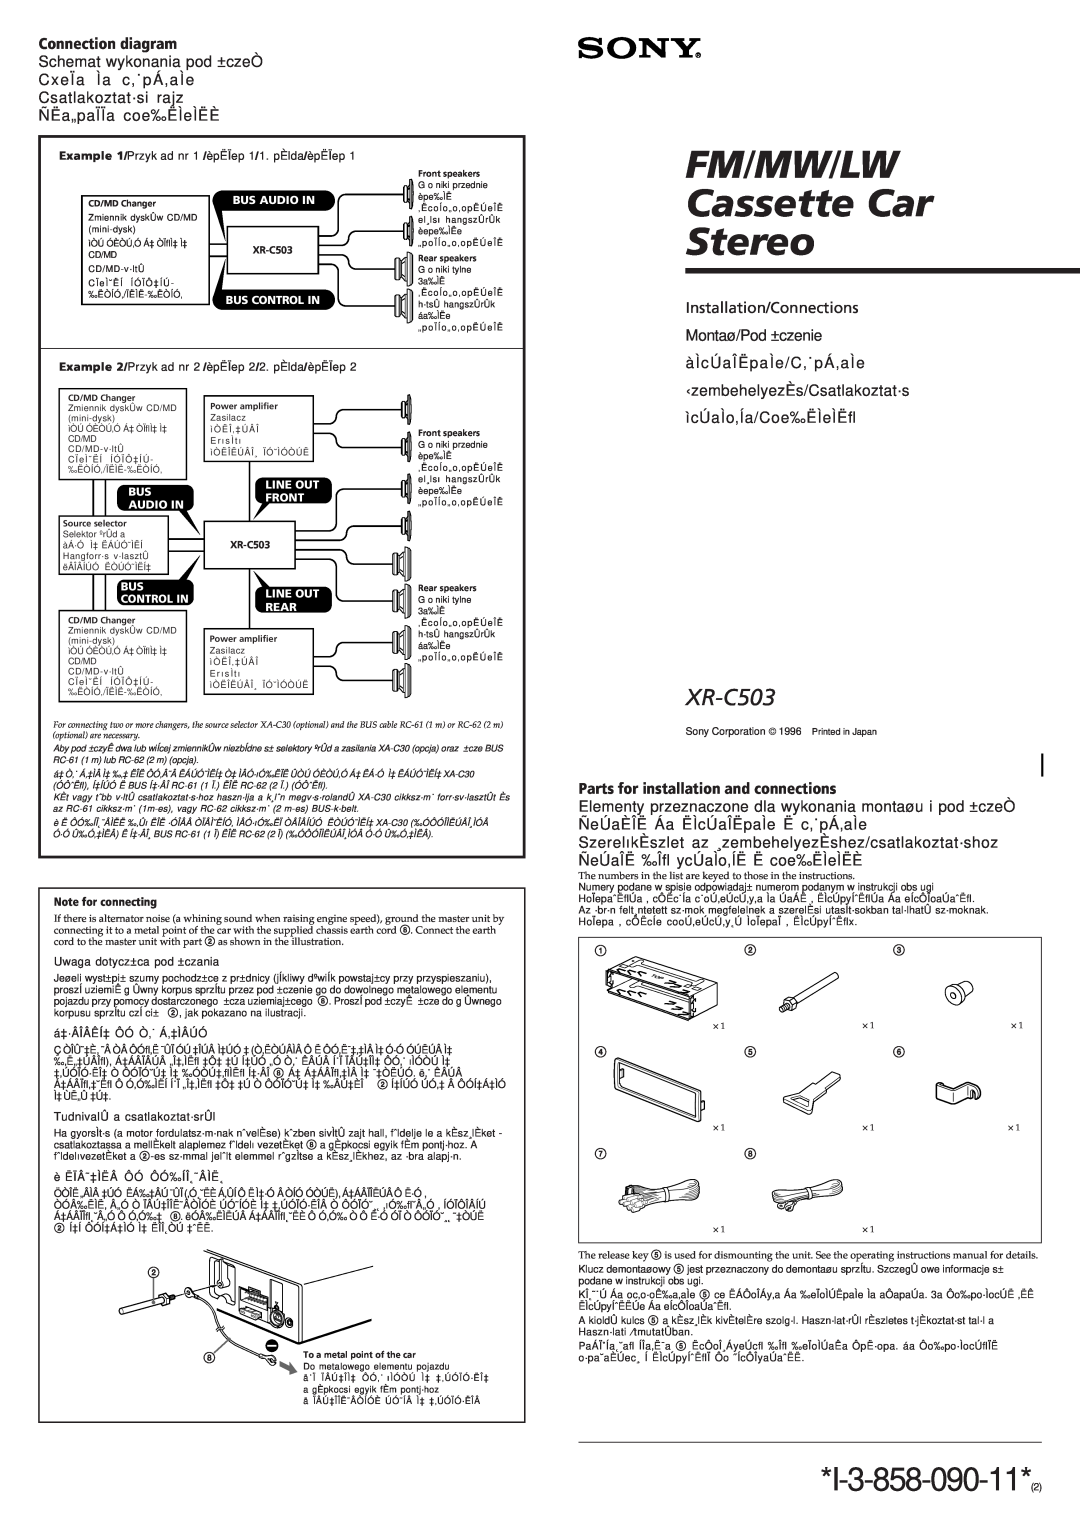 Sony XR-C503 manual Connection diagram, Montaø/Pod ±czenie, àÌcÚaÎËpaÌe/C‚˙pÁ‚aÌe, ‹zembehelyezÈs/Csatlakoztat·s 